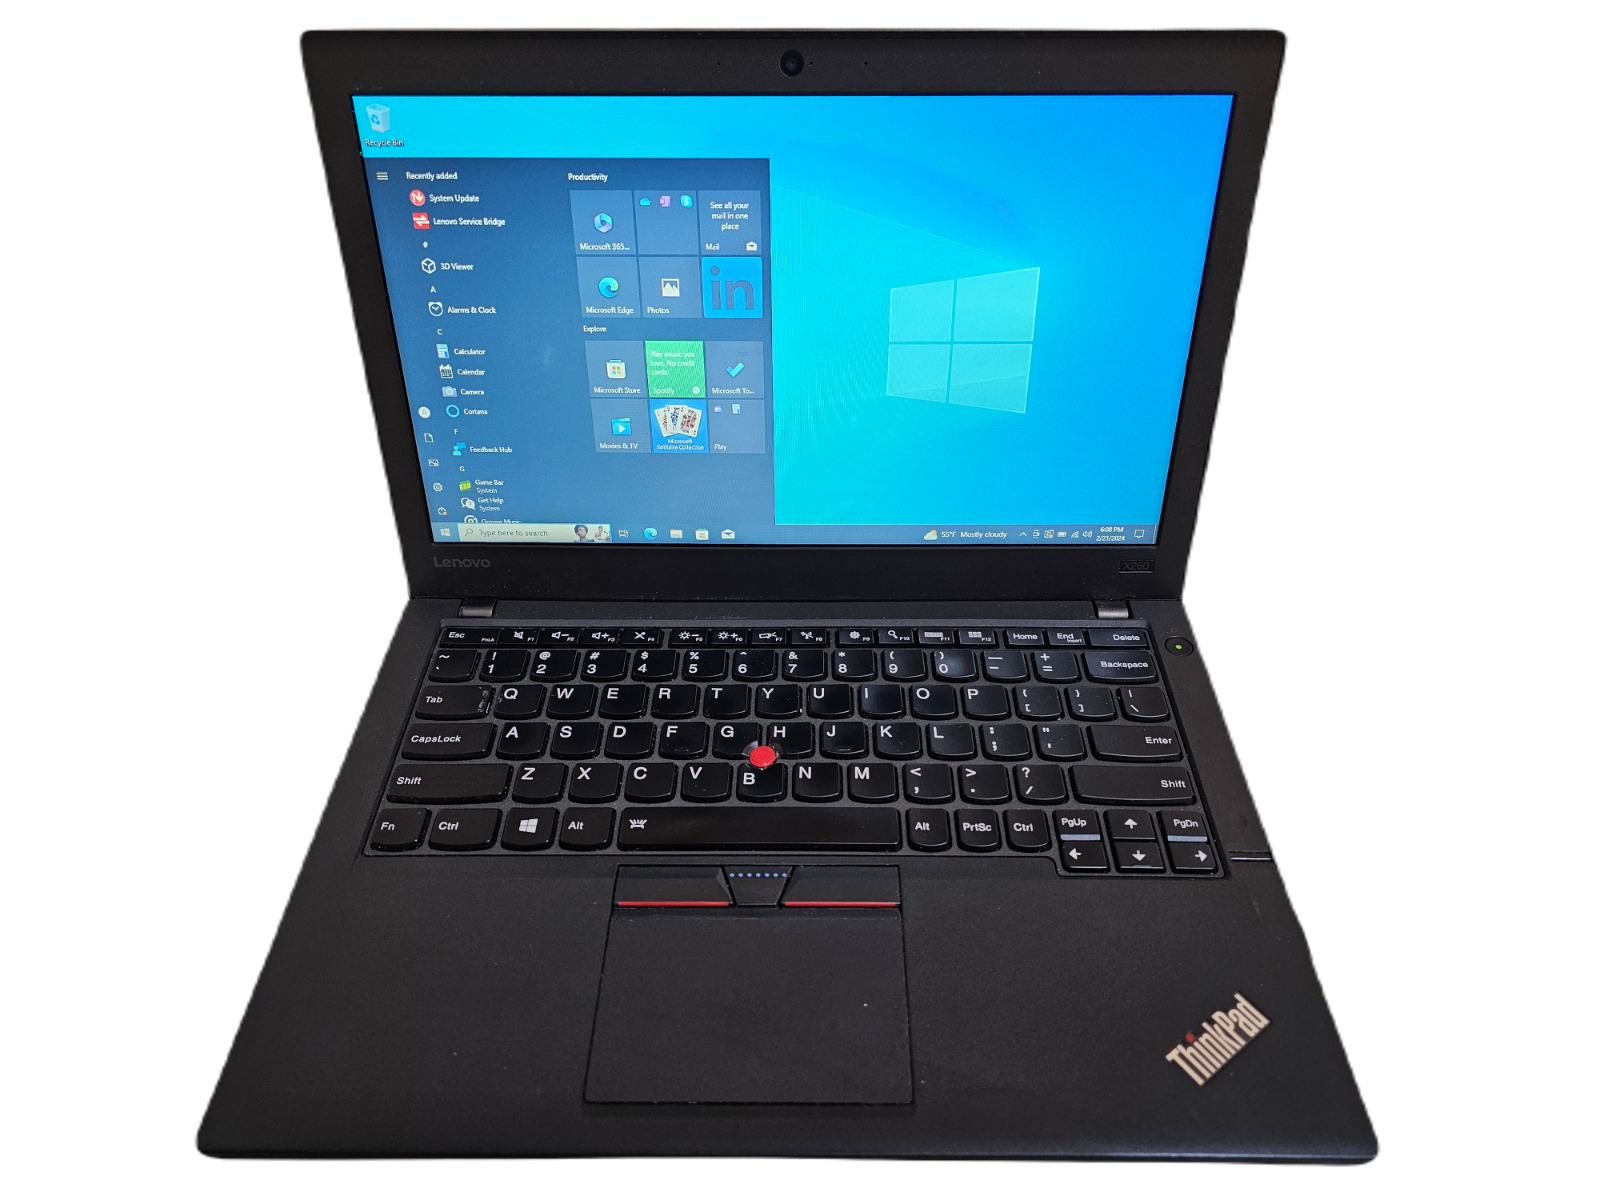 Lenovo ThinkPad X260 Laptop - 2.6 GHz i7-6600U 8GB 240GB SSD Wi-Fi Cam 12.5